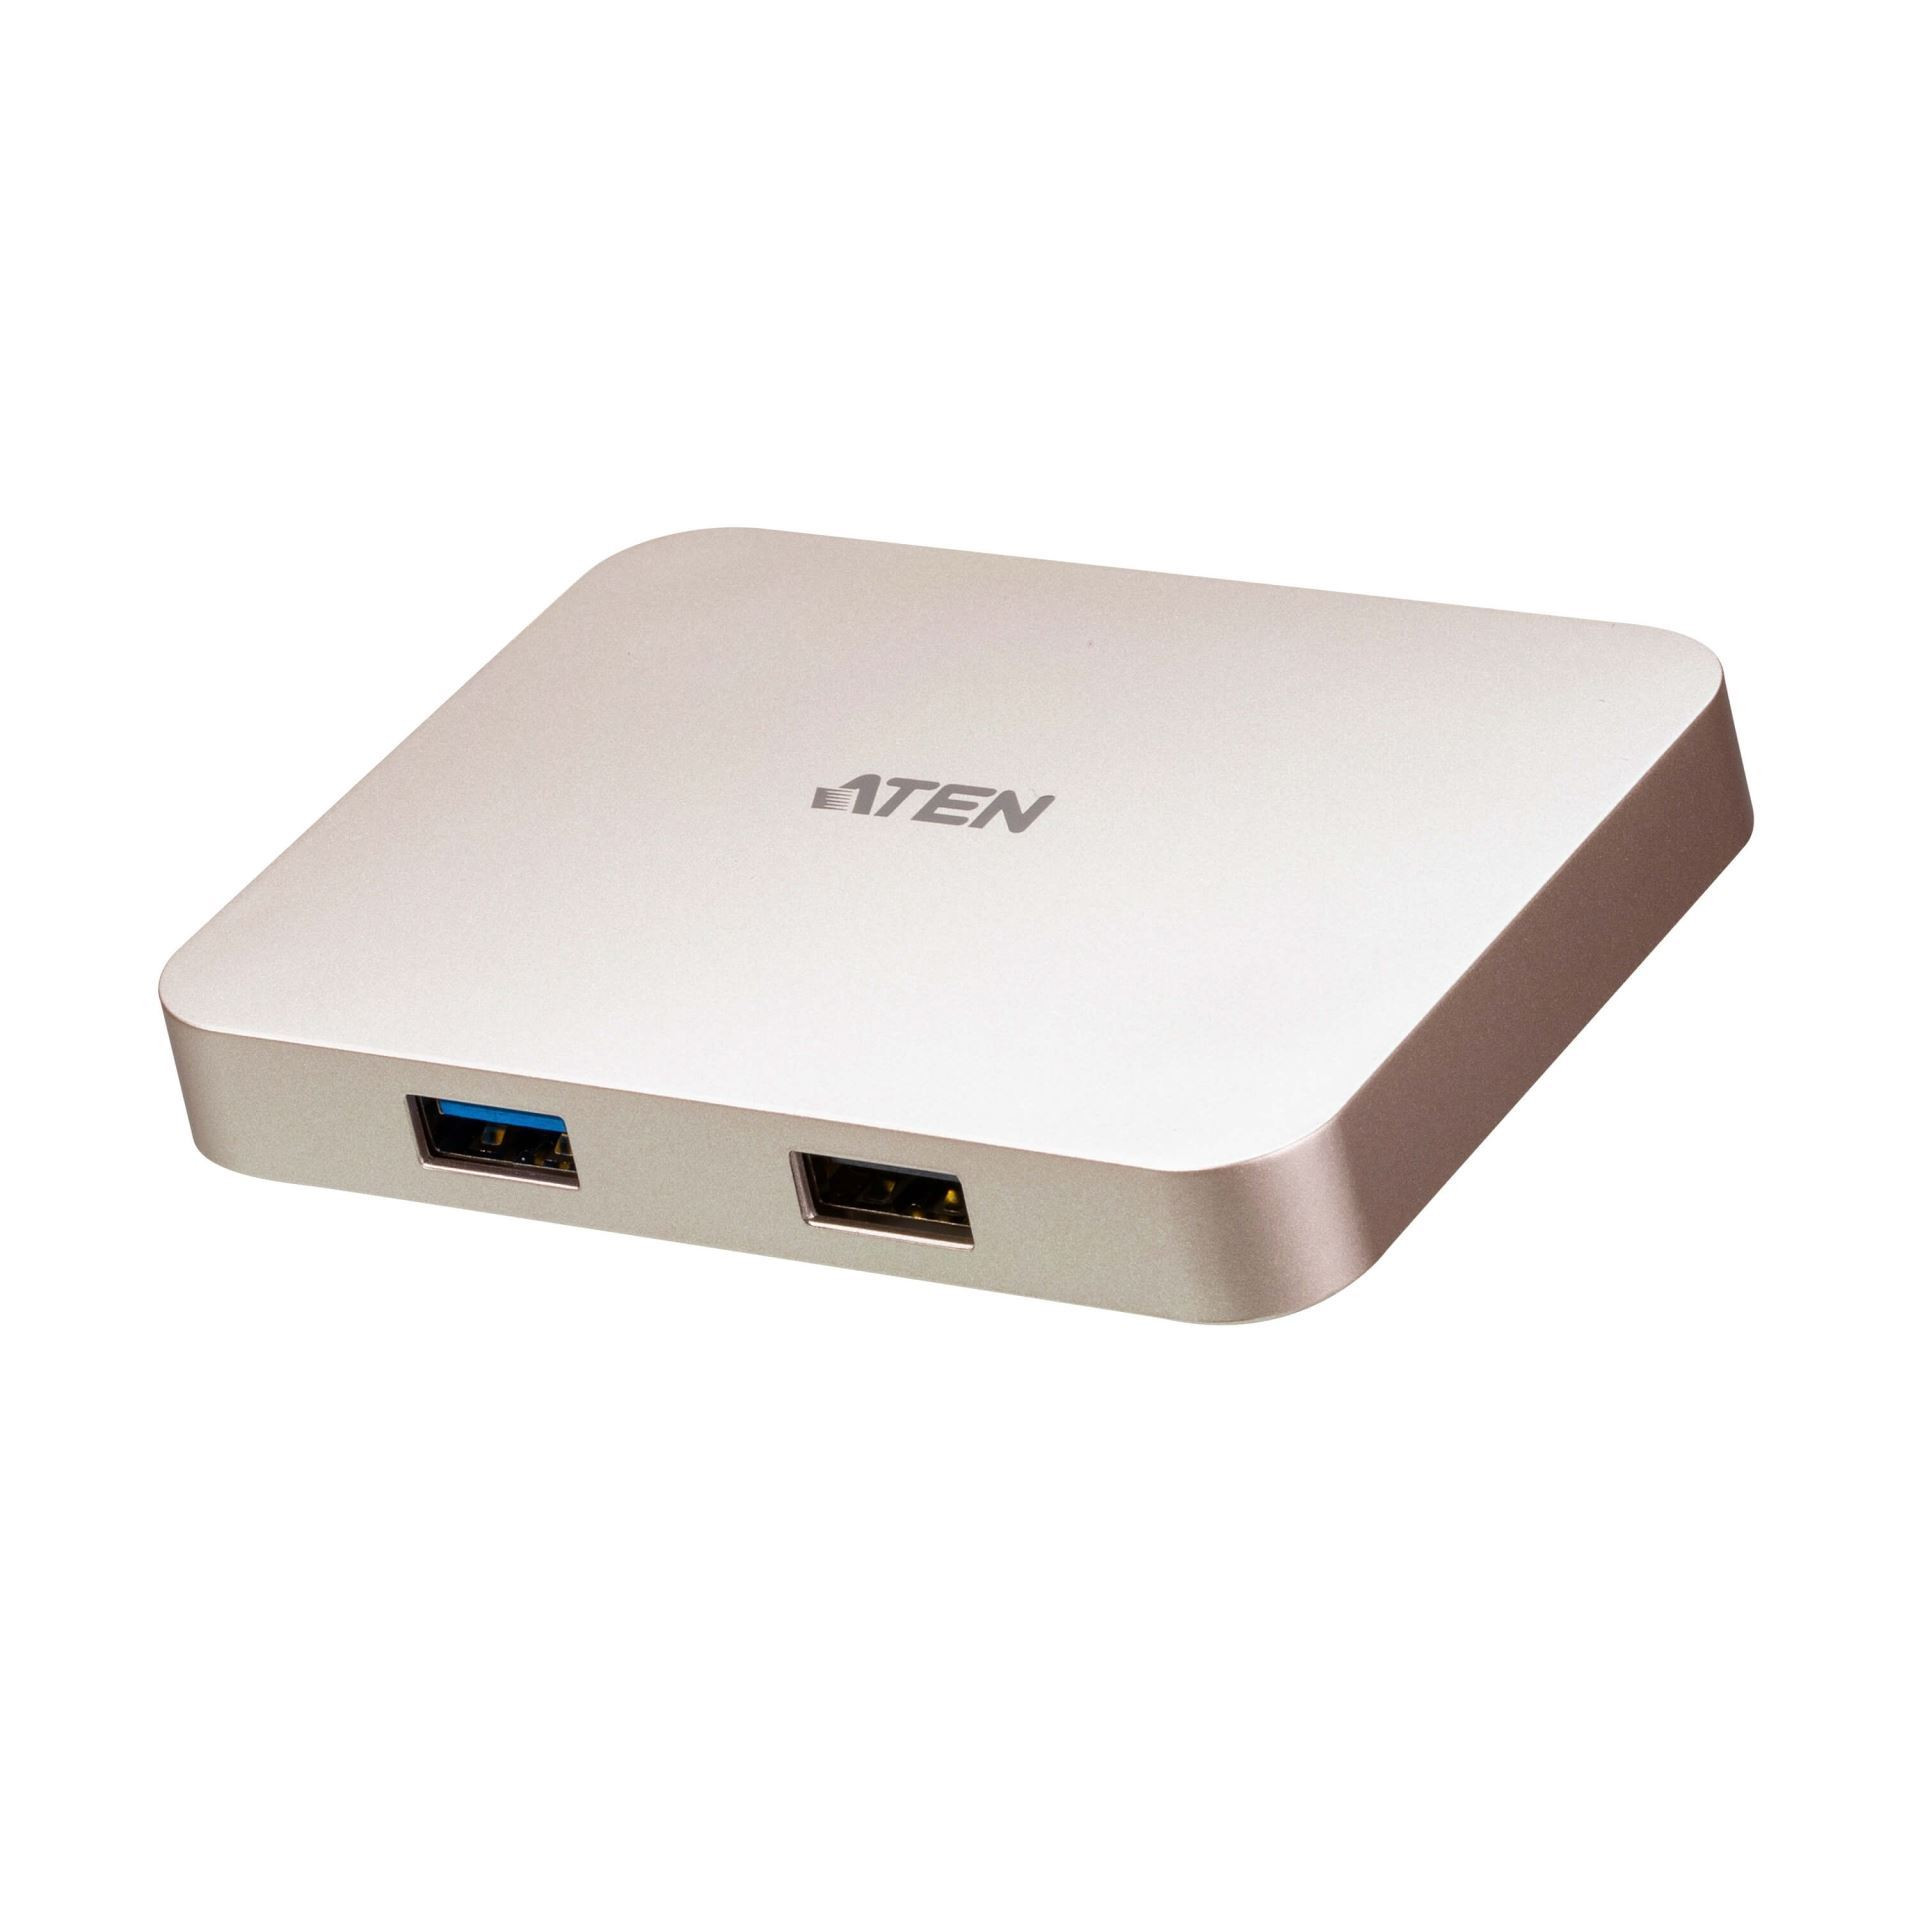 Pretvornik USB Tip-C 4K gaming mini Dock za mobilne naprave Aten